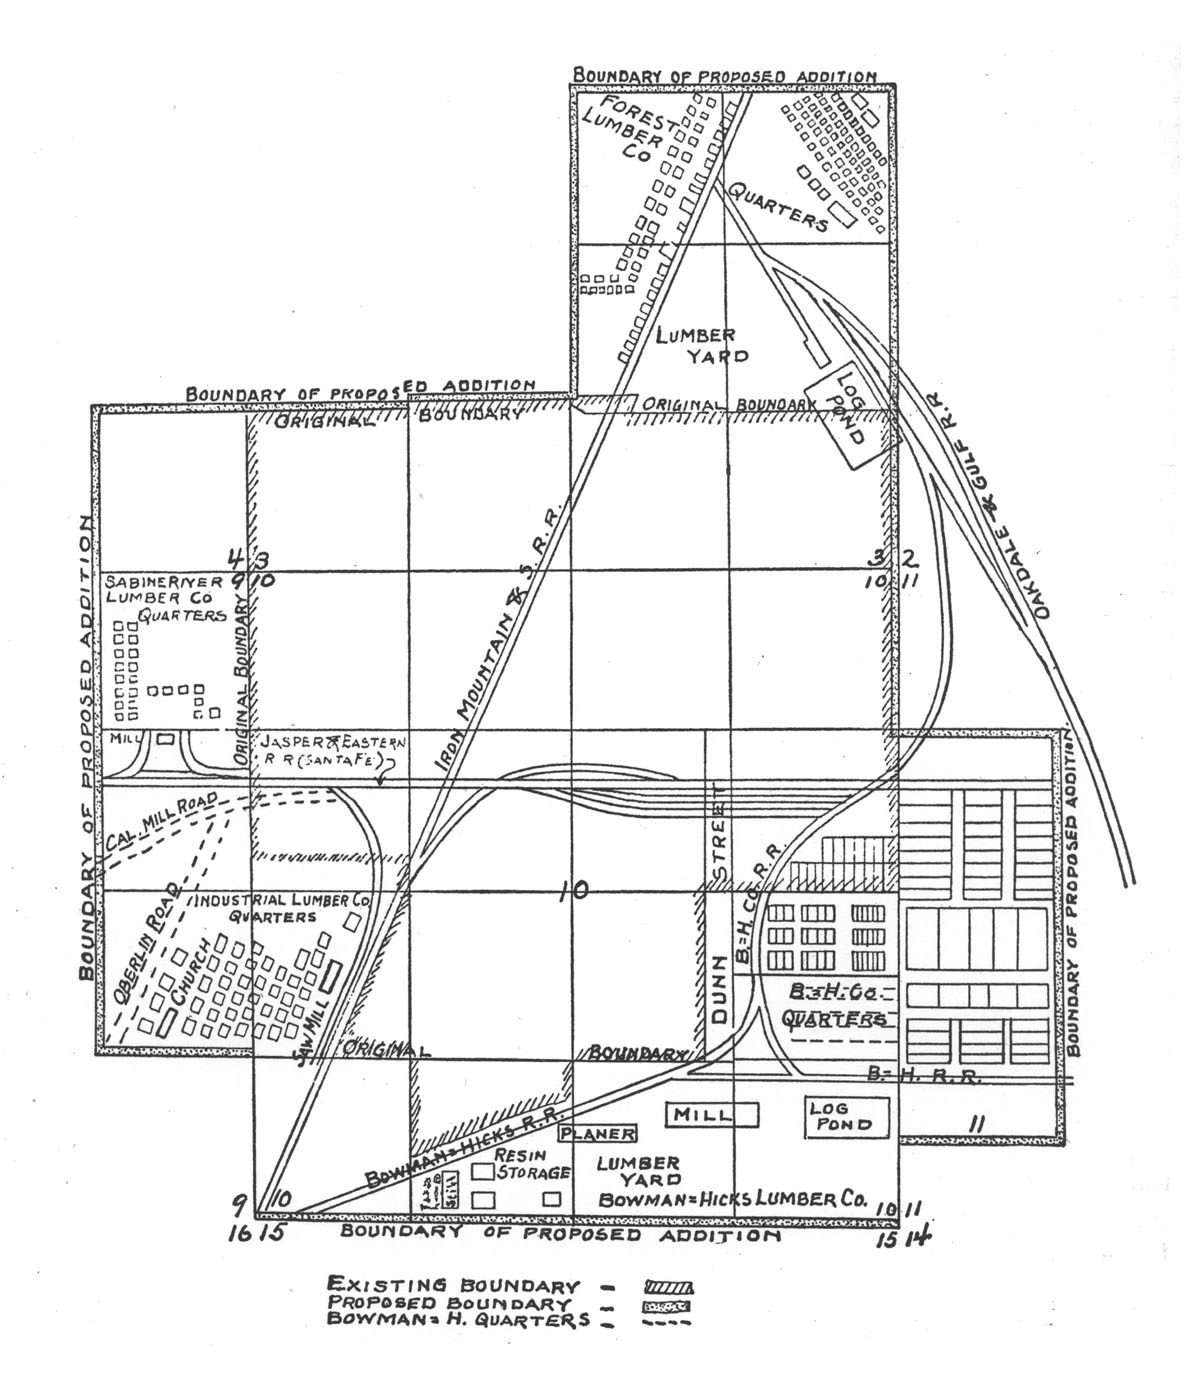 Oakdale & Gulf Railway Company (La.), Map Showing Mill Layout at Oakdale, Louisiana in 1918.